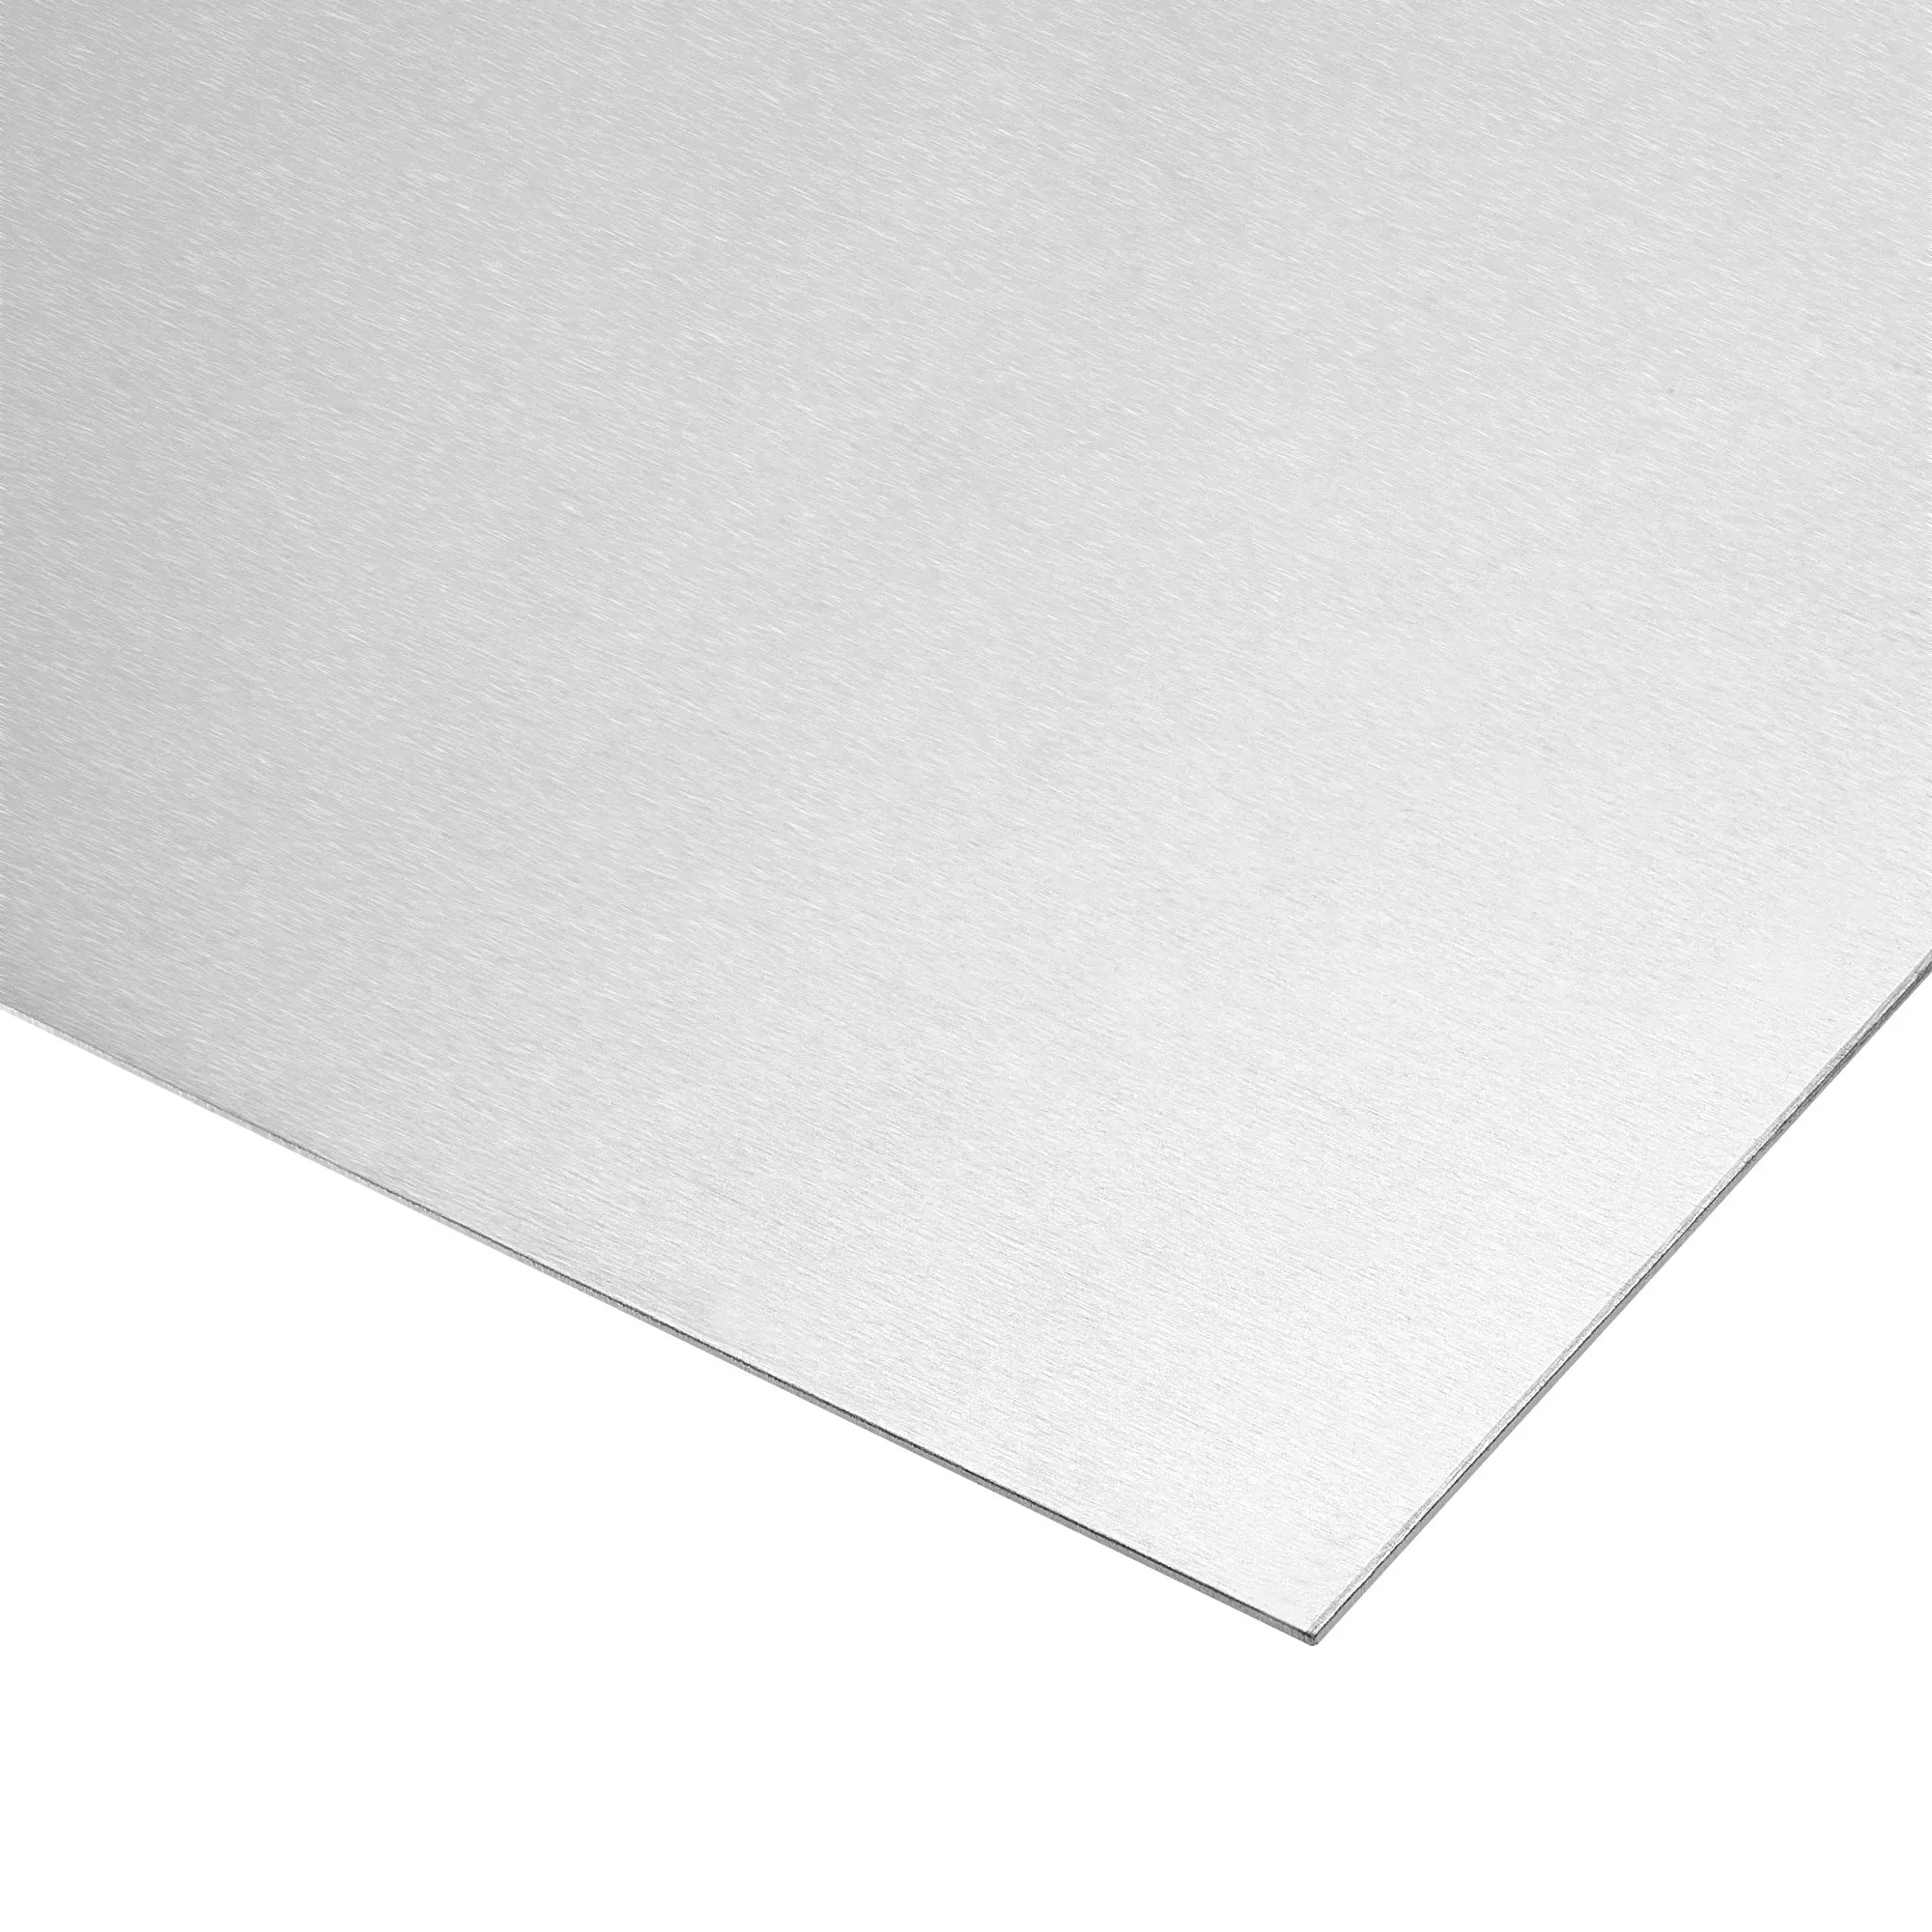 

Uxcell Aluminum Sheet, 300mm x 150mm x 1mm Thickness 6061 T6 Aluminum Plate